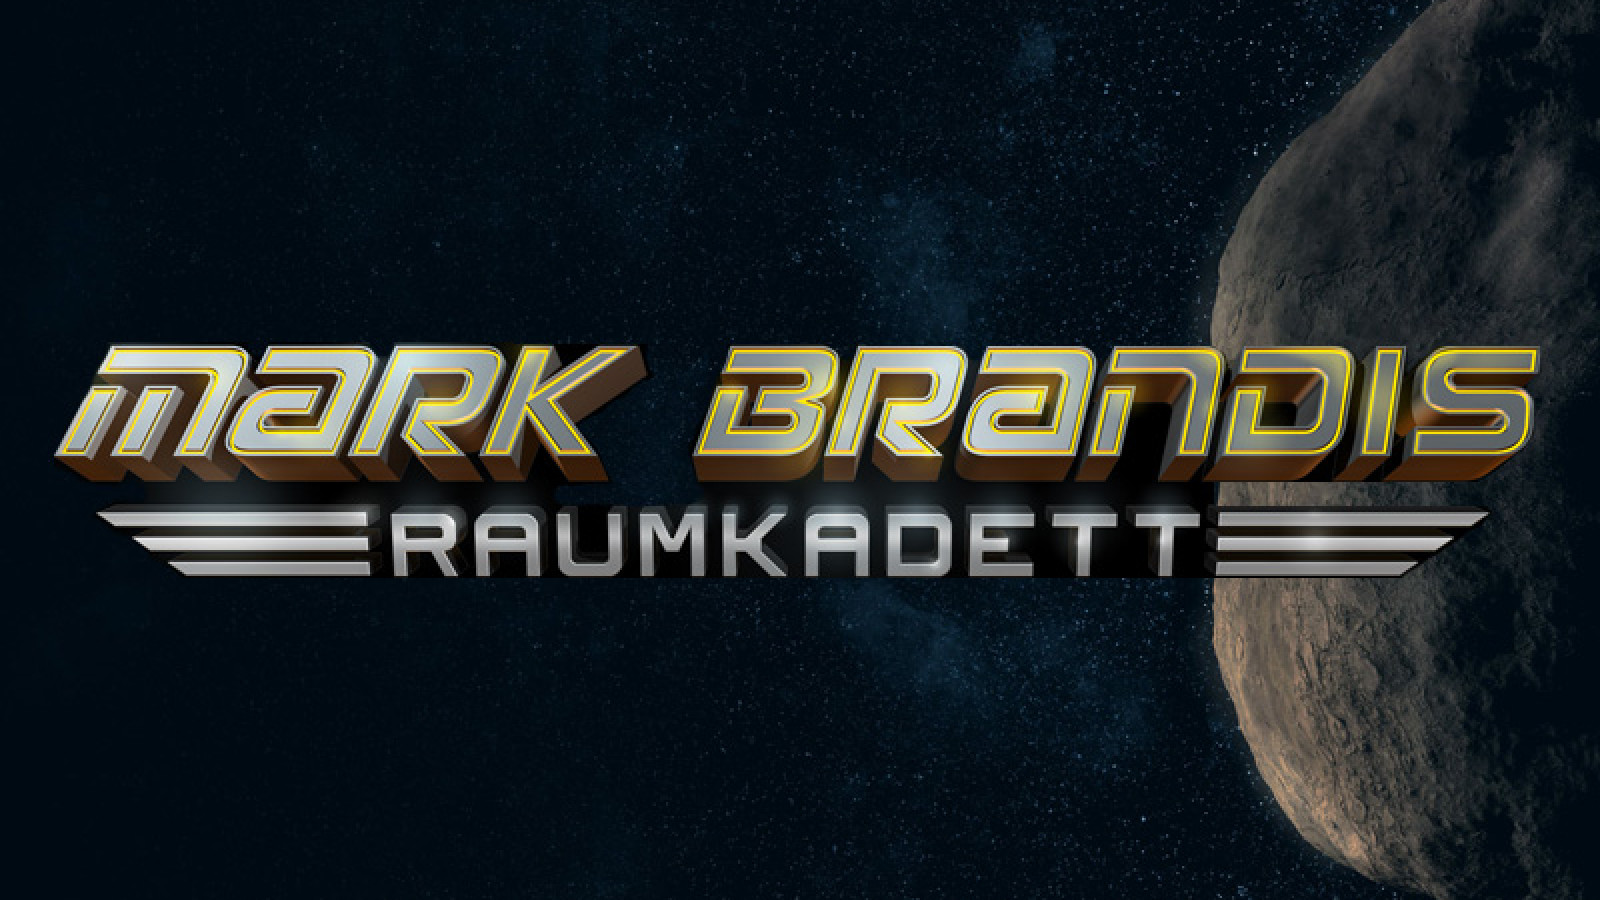 Mark Brandis - Raumkadett im Planetarium!